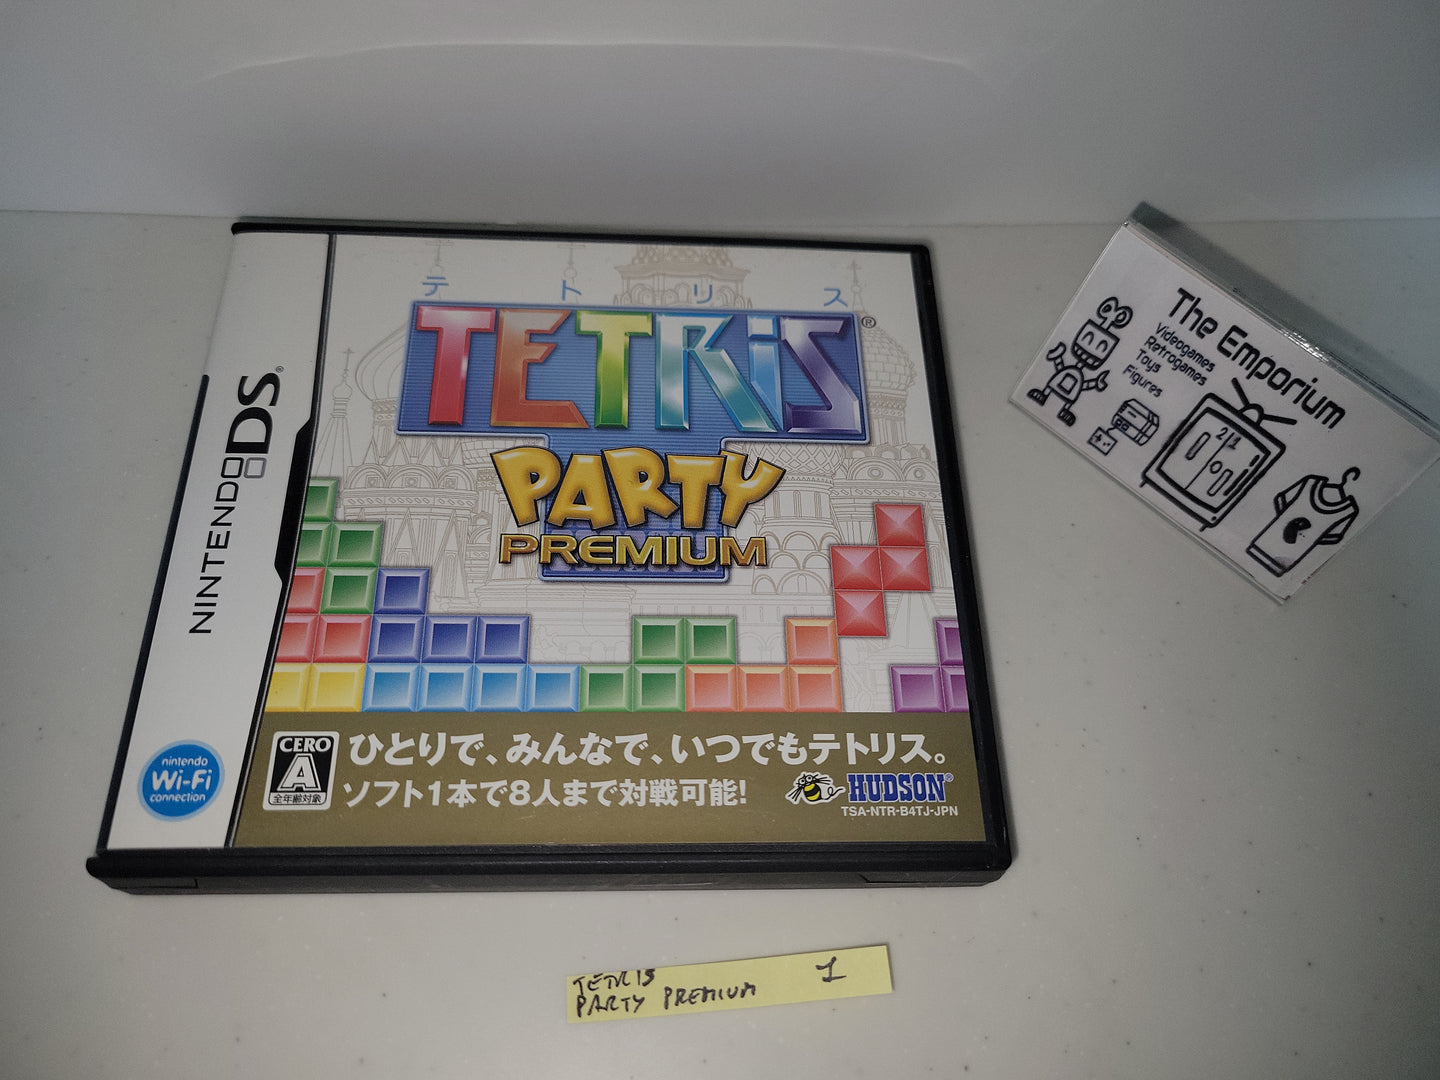 Tetris Party Premium
- Nintendo Ds NDS